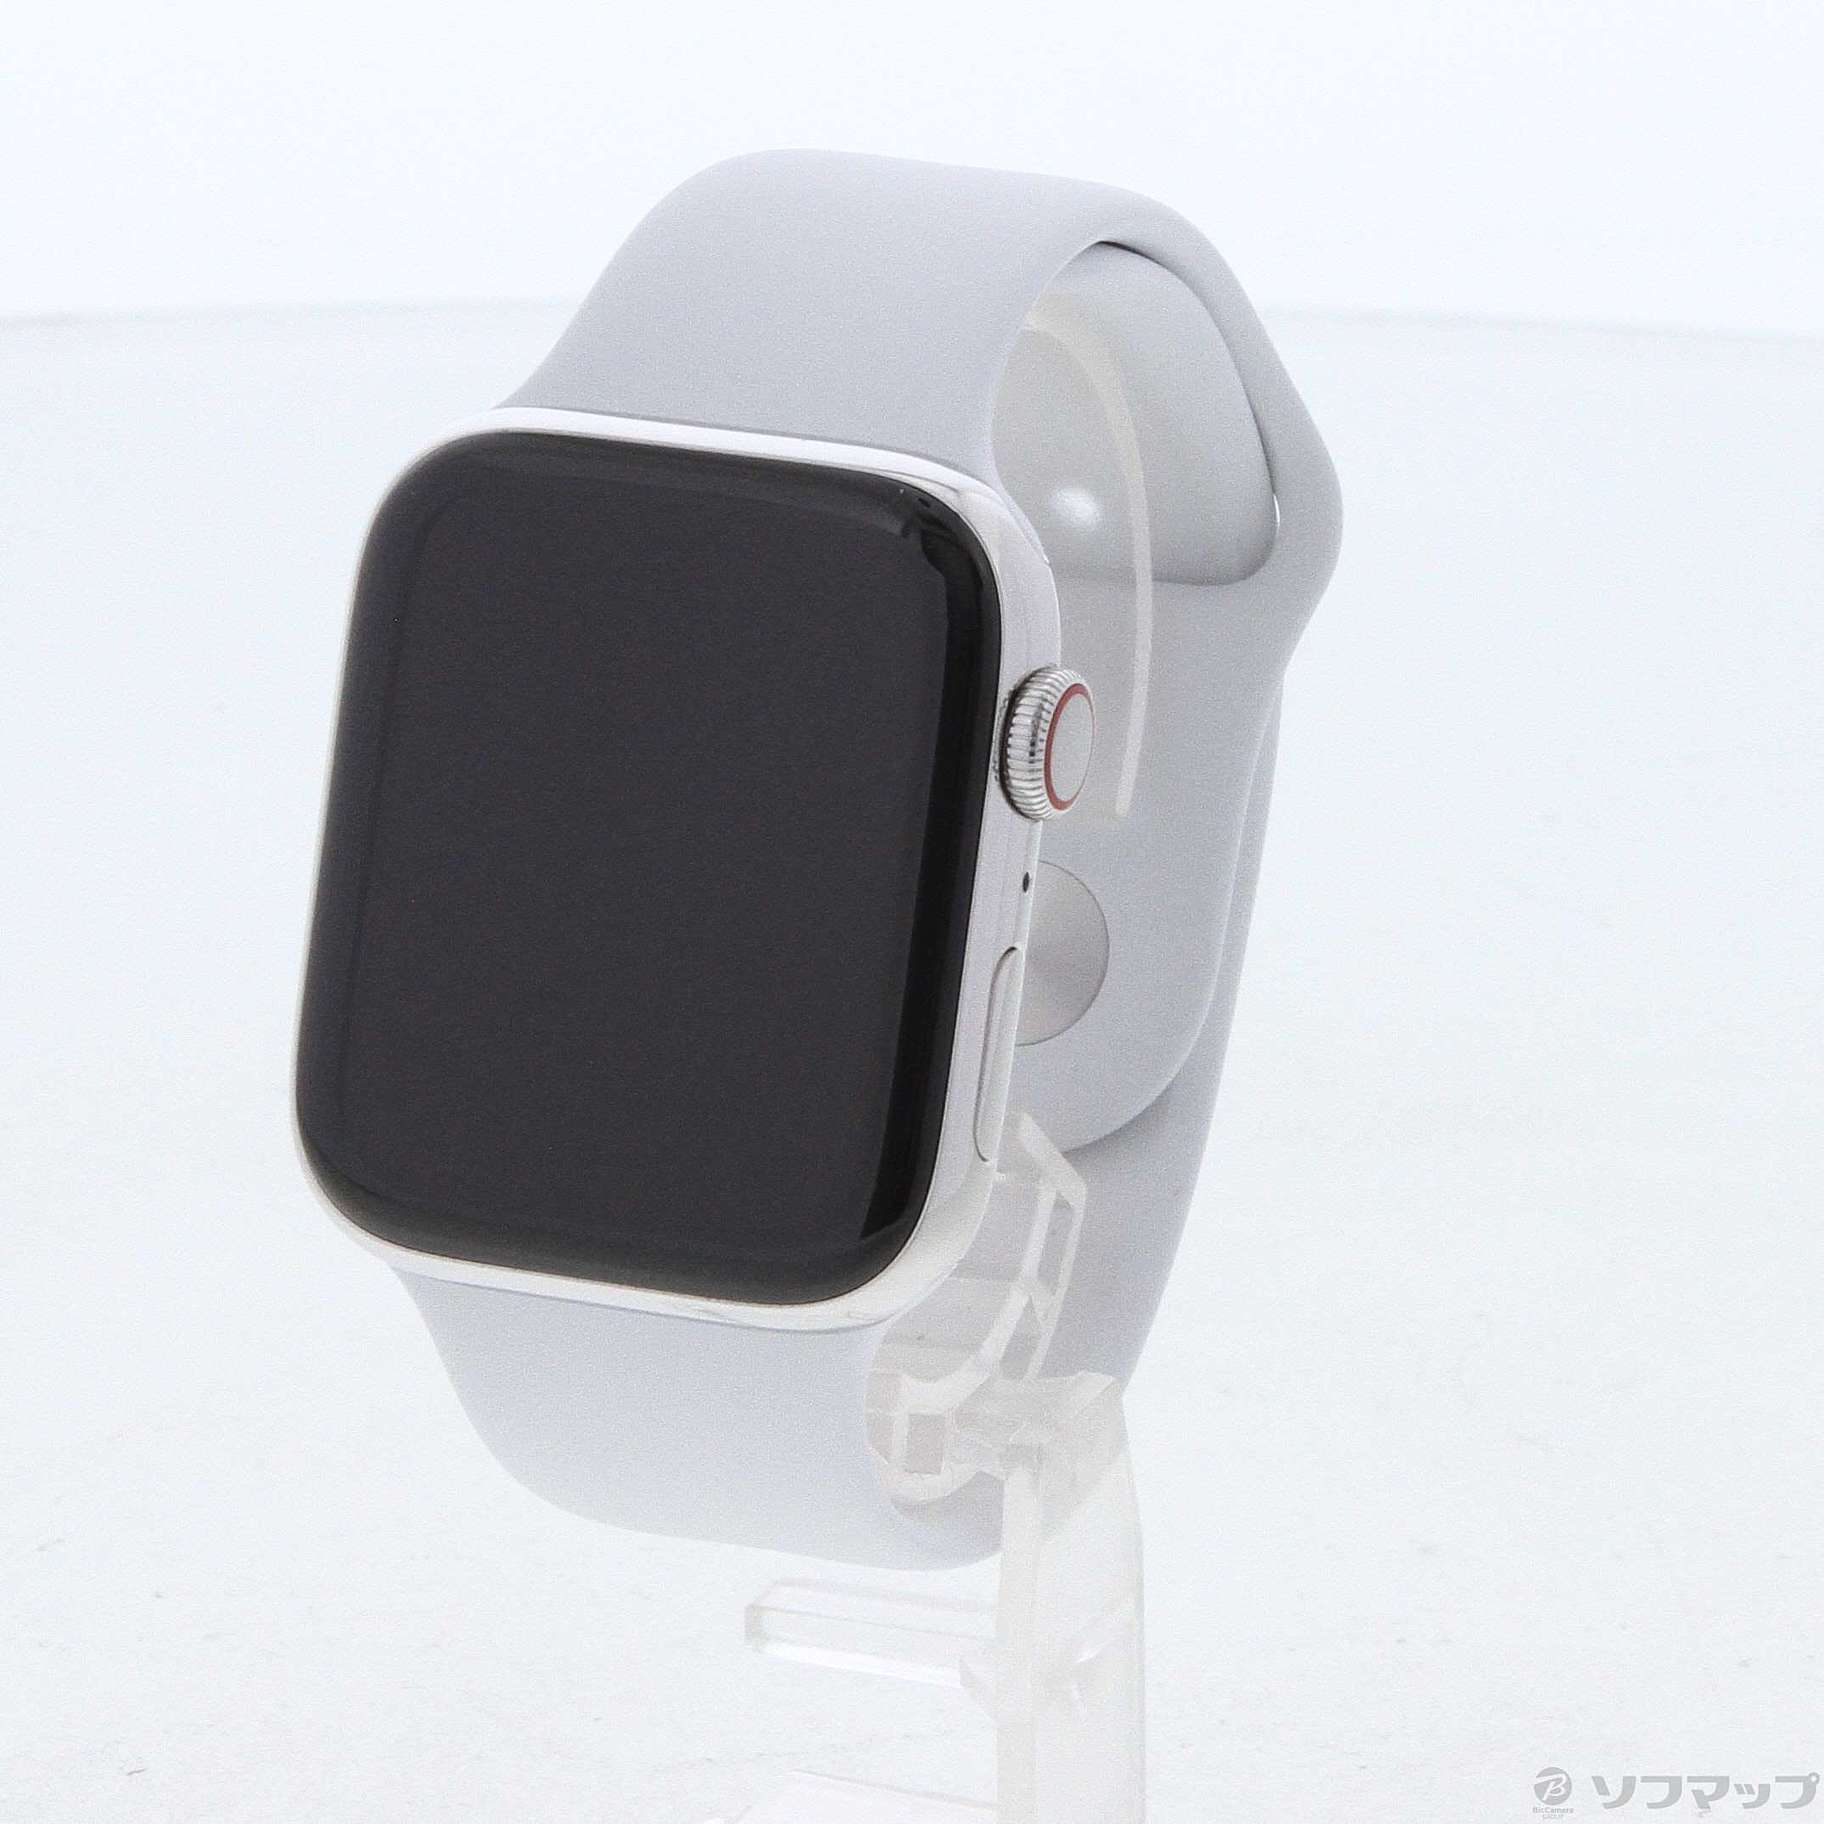 Apple Watch Series 4 ステンレススチール Cellular-